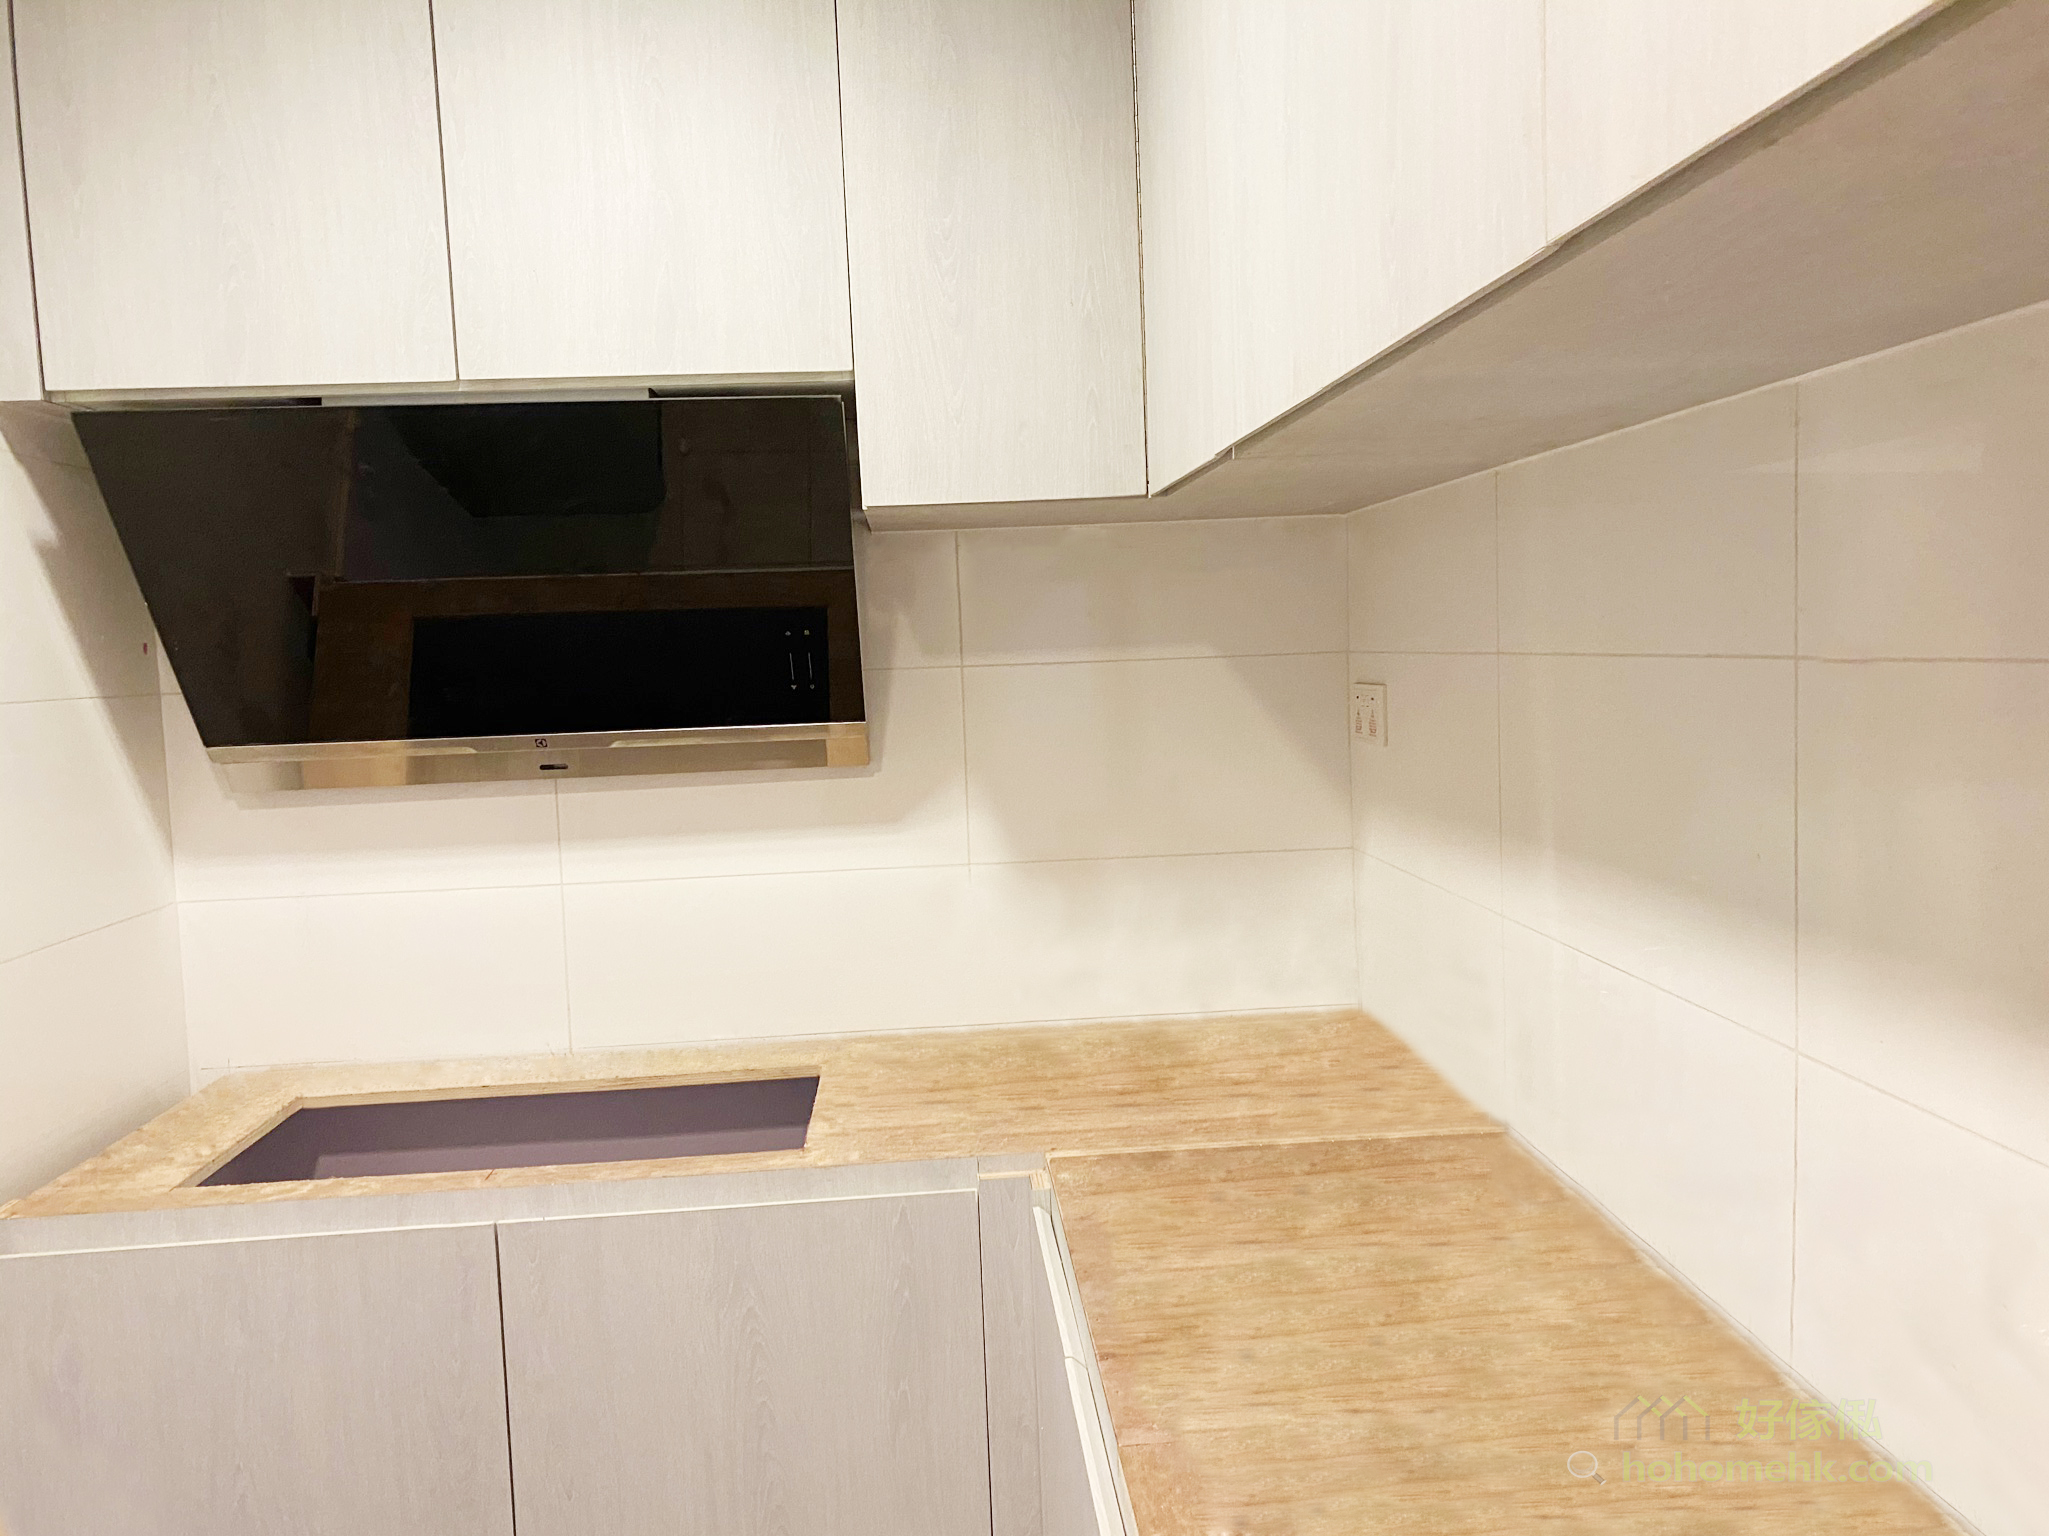 廚具的吊櫃和地櫃部份用同一個顏色，廚房就能保持整體的和諧性，不會有空間被割裂開的感覺